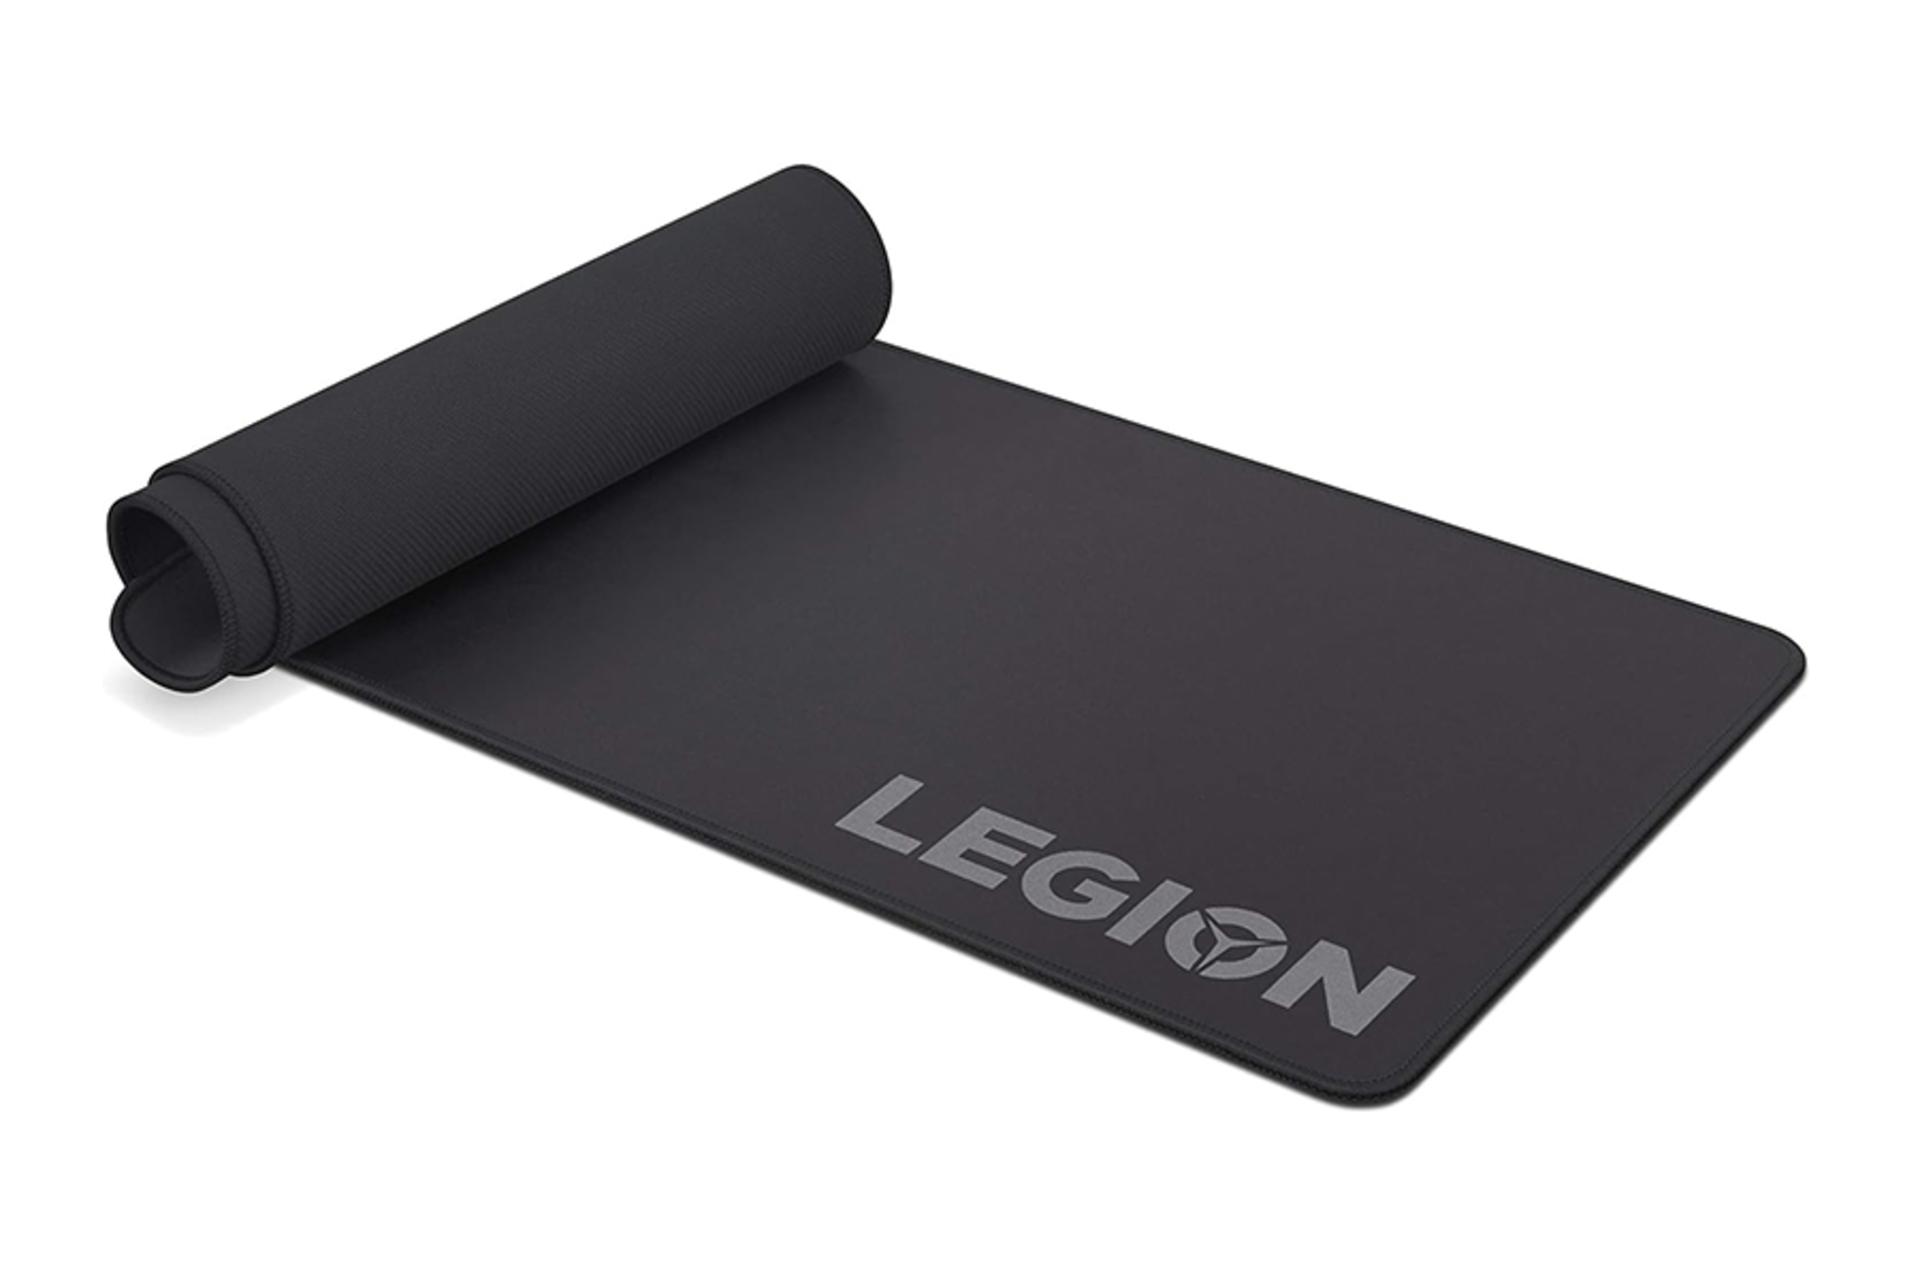 ماوس پد لنوو Lenovo Legion XL رول شده